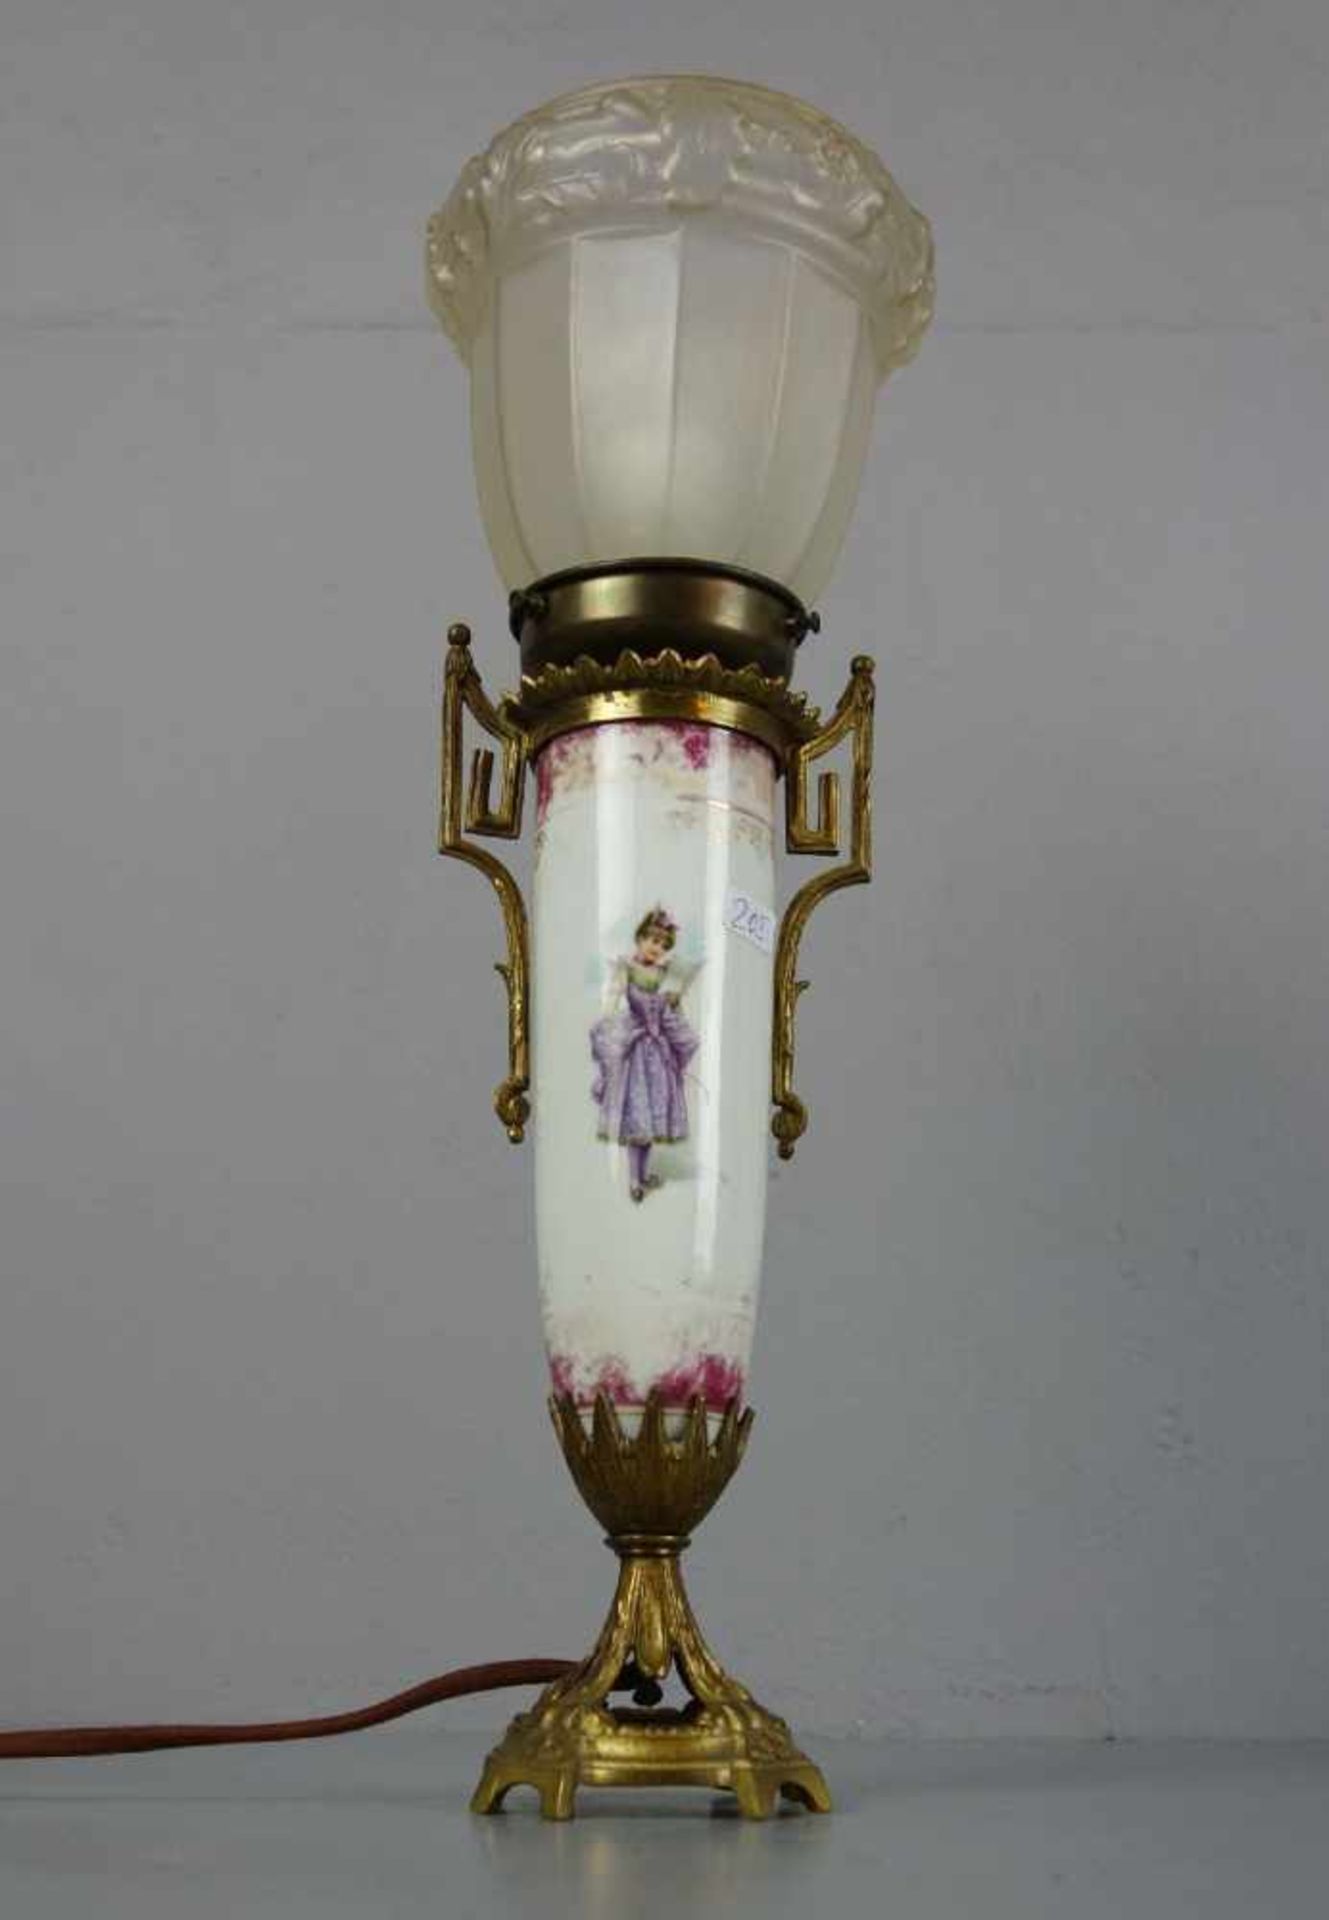 TISCHLAMPE / table lamp, Mariage. Satinierter Lampenschirm mit erhabenem Eichenlaub-Dekor. Schirm - Image 3 of 4